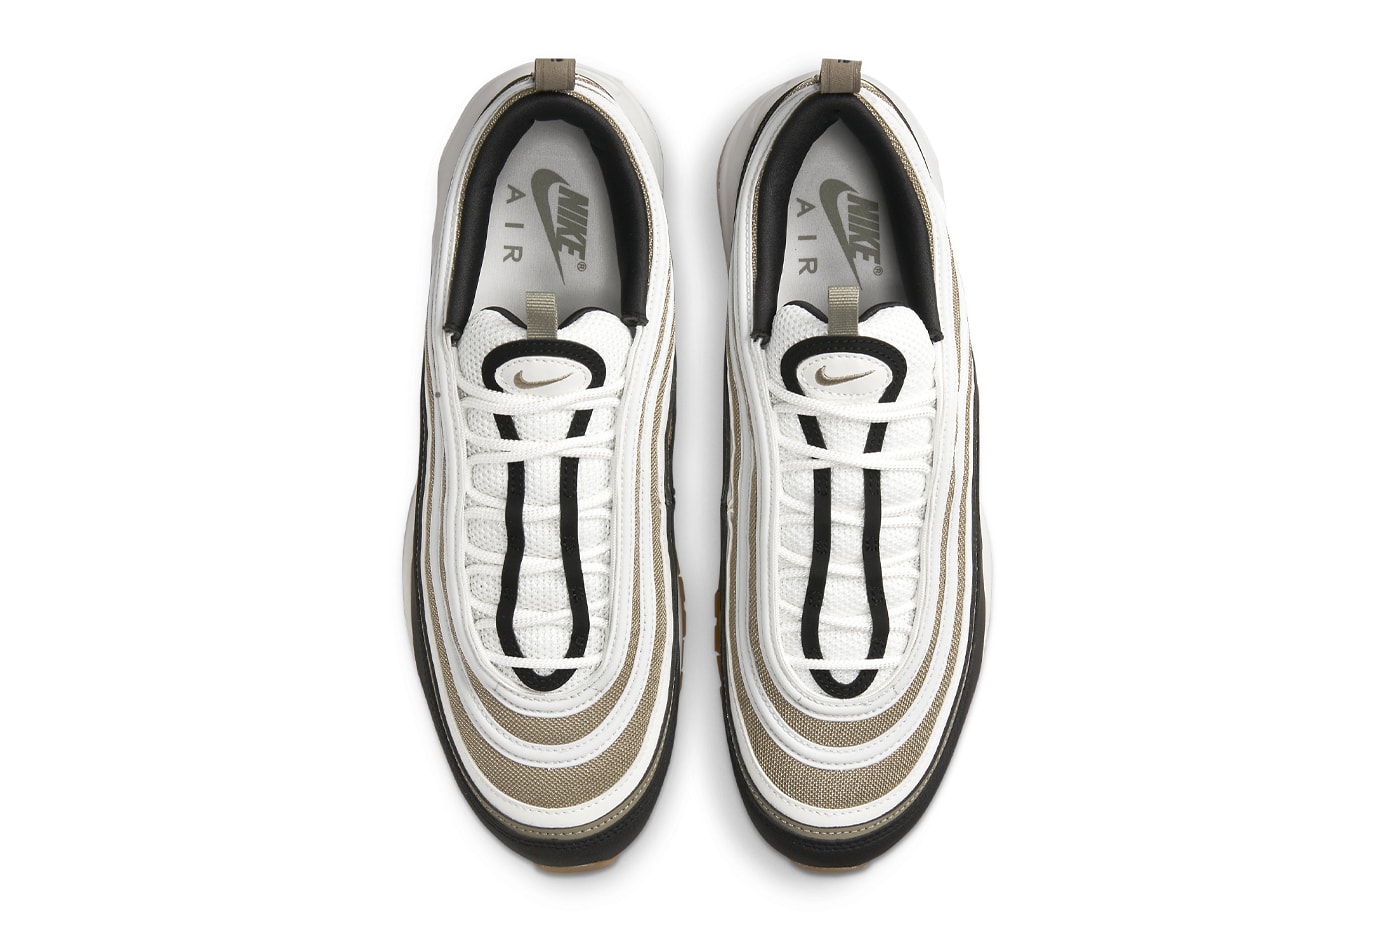 ナイキエアマックス97から春夏らしい新色 “ライトオリーブ”が登場 Official Look At the Nike Air Max 97 "Light Olive" 921826-203 cactus jack neutral brown gum soles